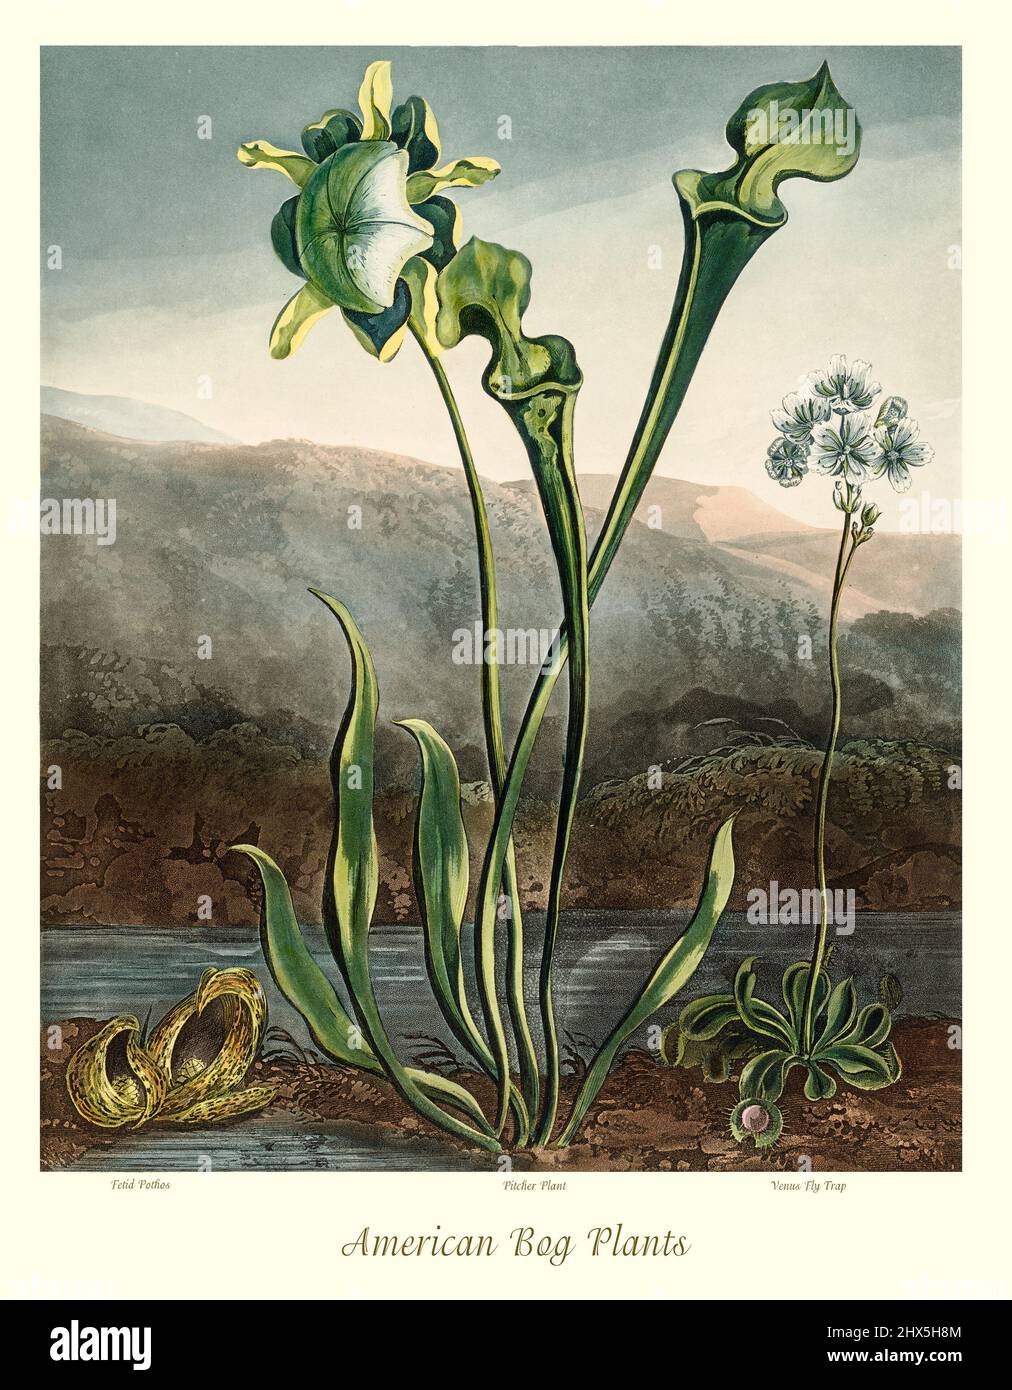 Un'illustrazione di inizio 19th secolo delle piante americane di Bog, che mostra un cavolo skunk (Symplocarpus foetidus), una piantina gialla (Sarracenia flava), e un flytrap di Venus (Dionaea muscipula) che cresce sulla riva di uno stagno. La piantina gialla e il flytrap di Venus sono piante carnivore. Questa opera di Robert John Thornton 'il Tempio della Flora' nel 1807, è stata stampata, per l'editore, da T. Bensley, Londra, Inghilterra. Foto Stock